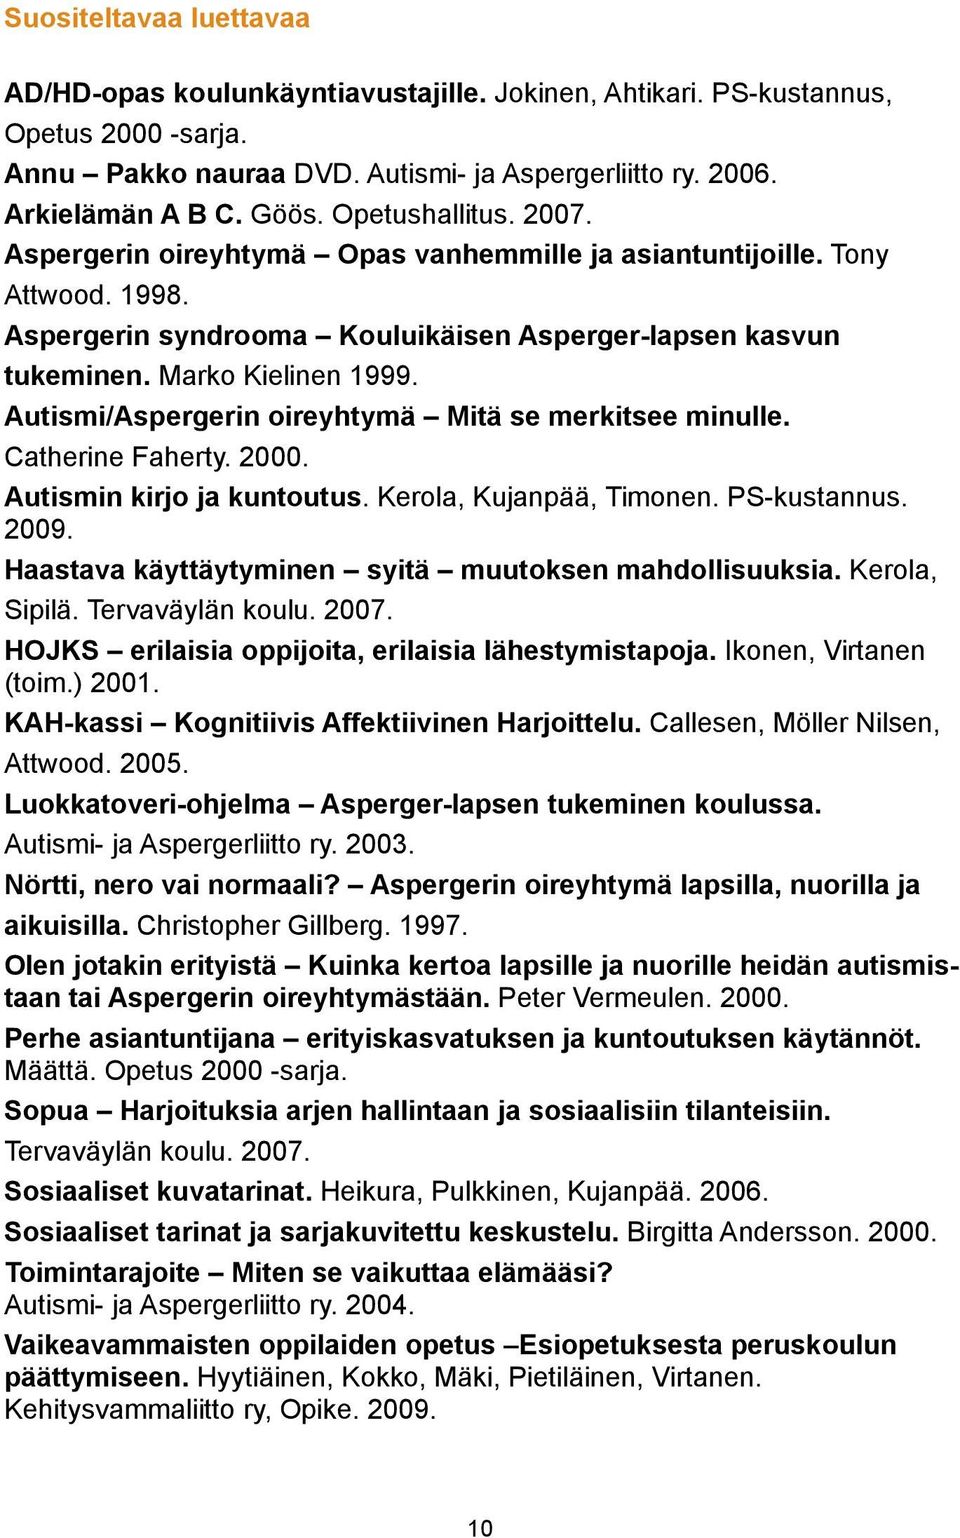 Autismi/Aspergerin oireyhtymä Mitä se merkitsee minulle. Catherine Faherty. 2000. Autismin kirjo ja kuntoutus. Kerola, Kujanpää, Timonen. PS-kustannus. 2009.